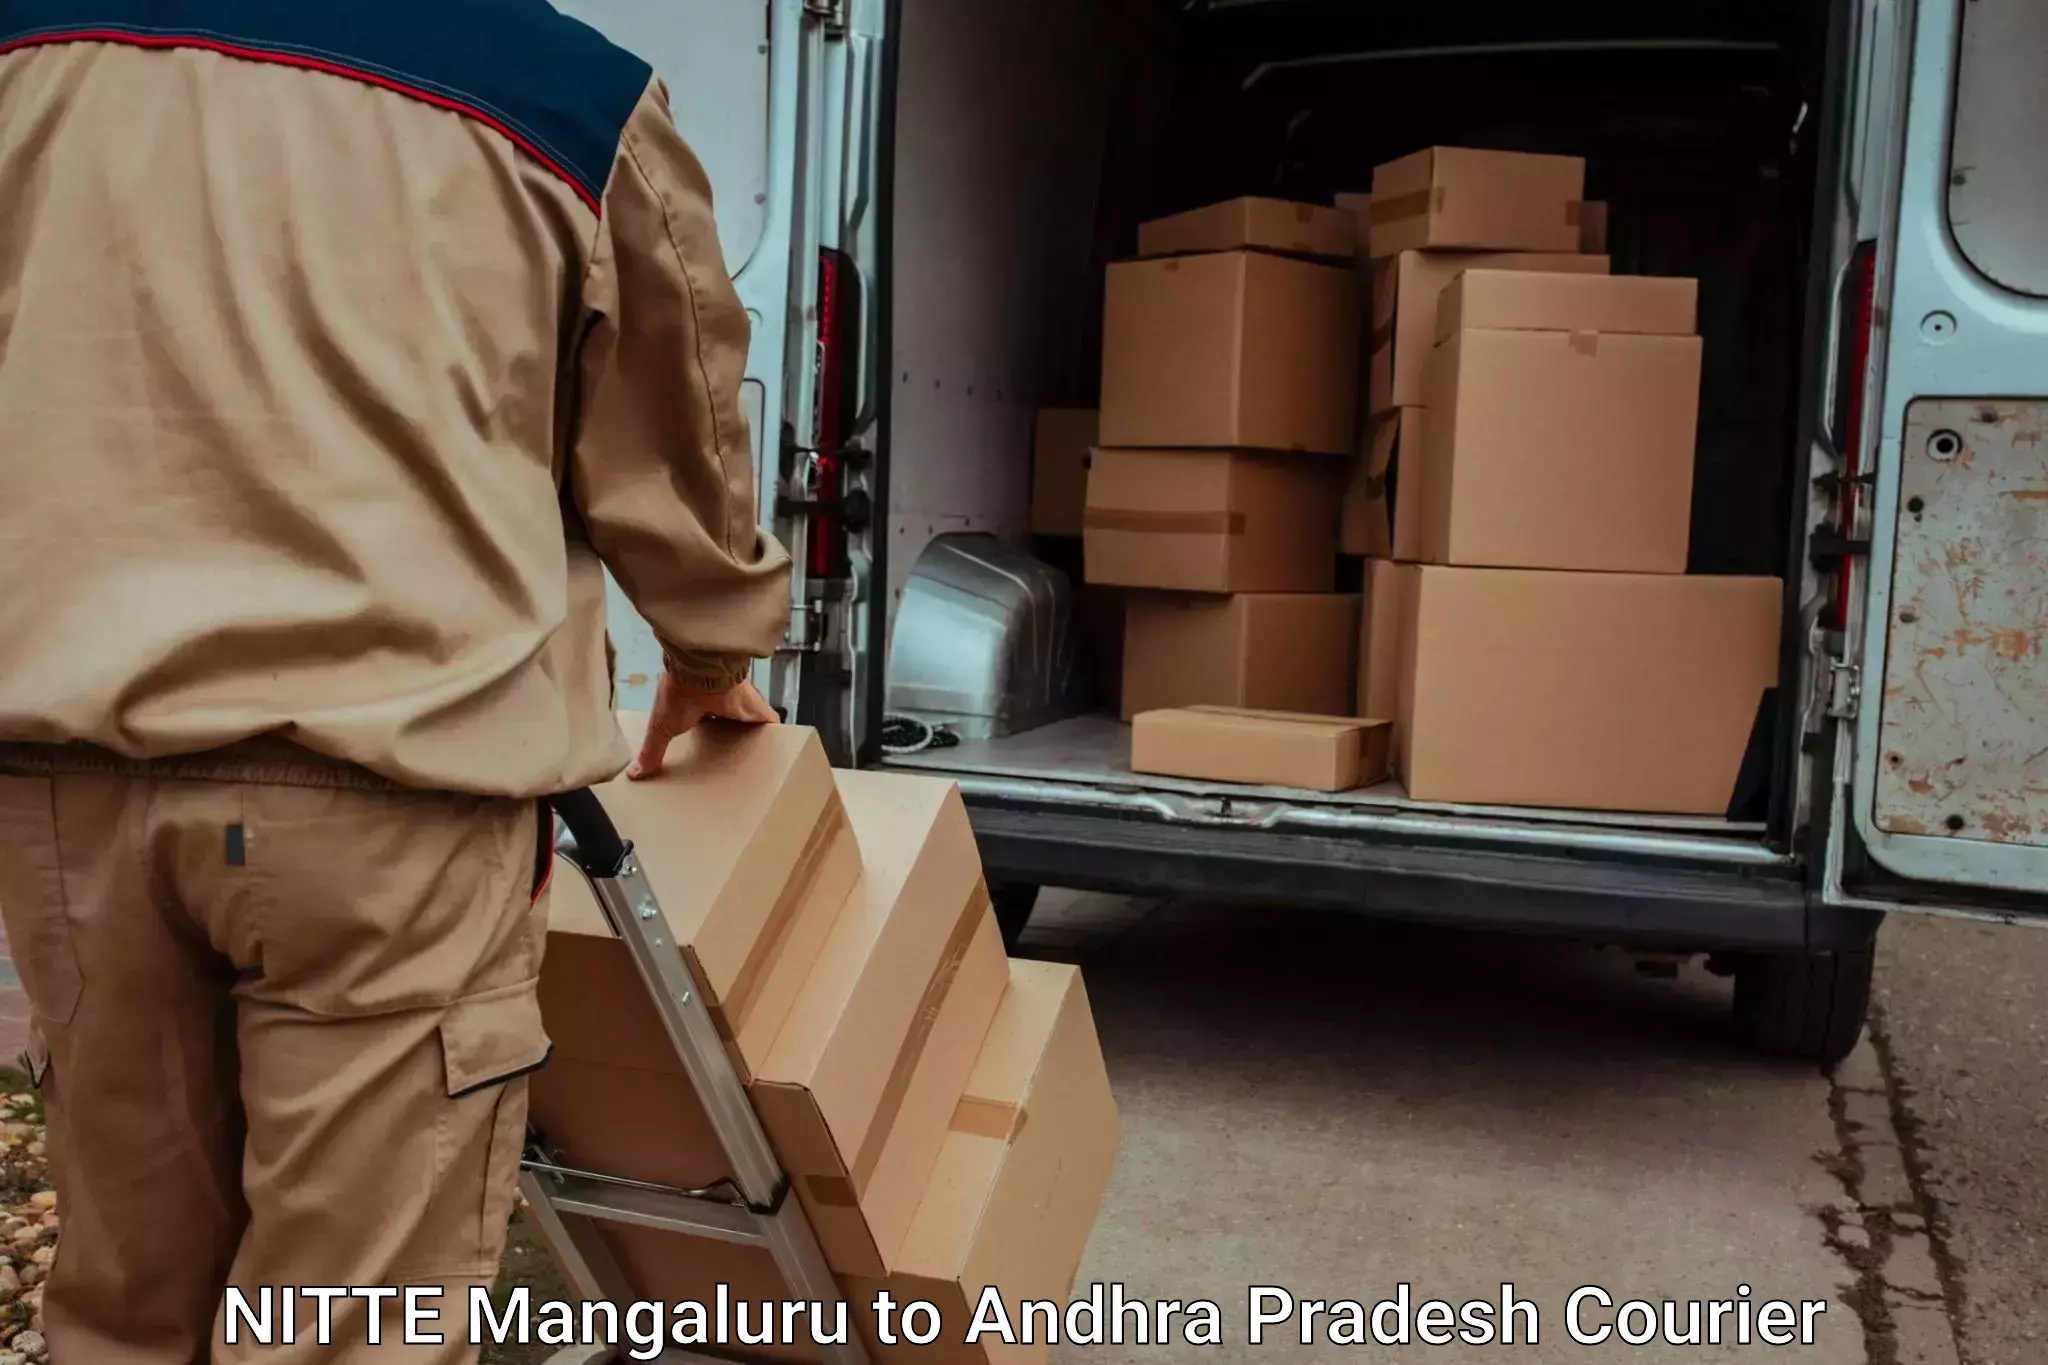 Luggage transport consultancy NITTE Mangaluru to Kalyandurg